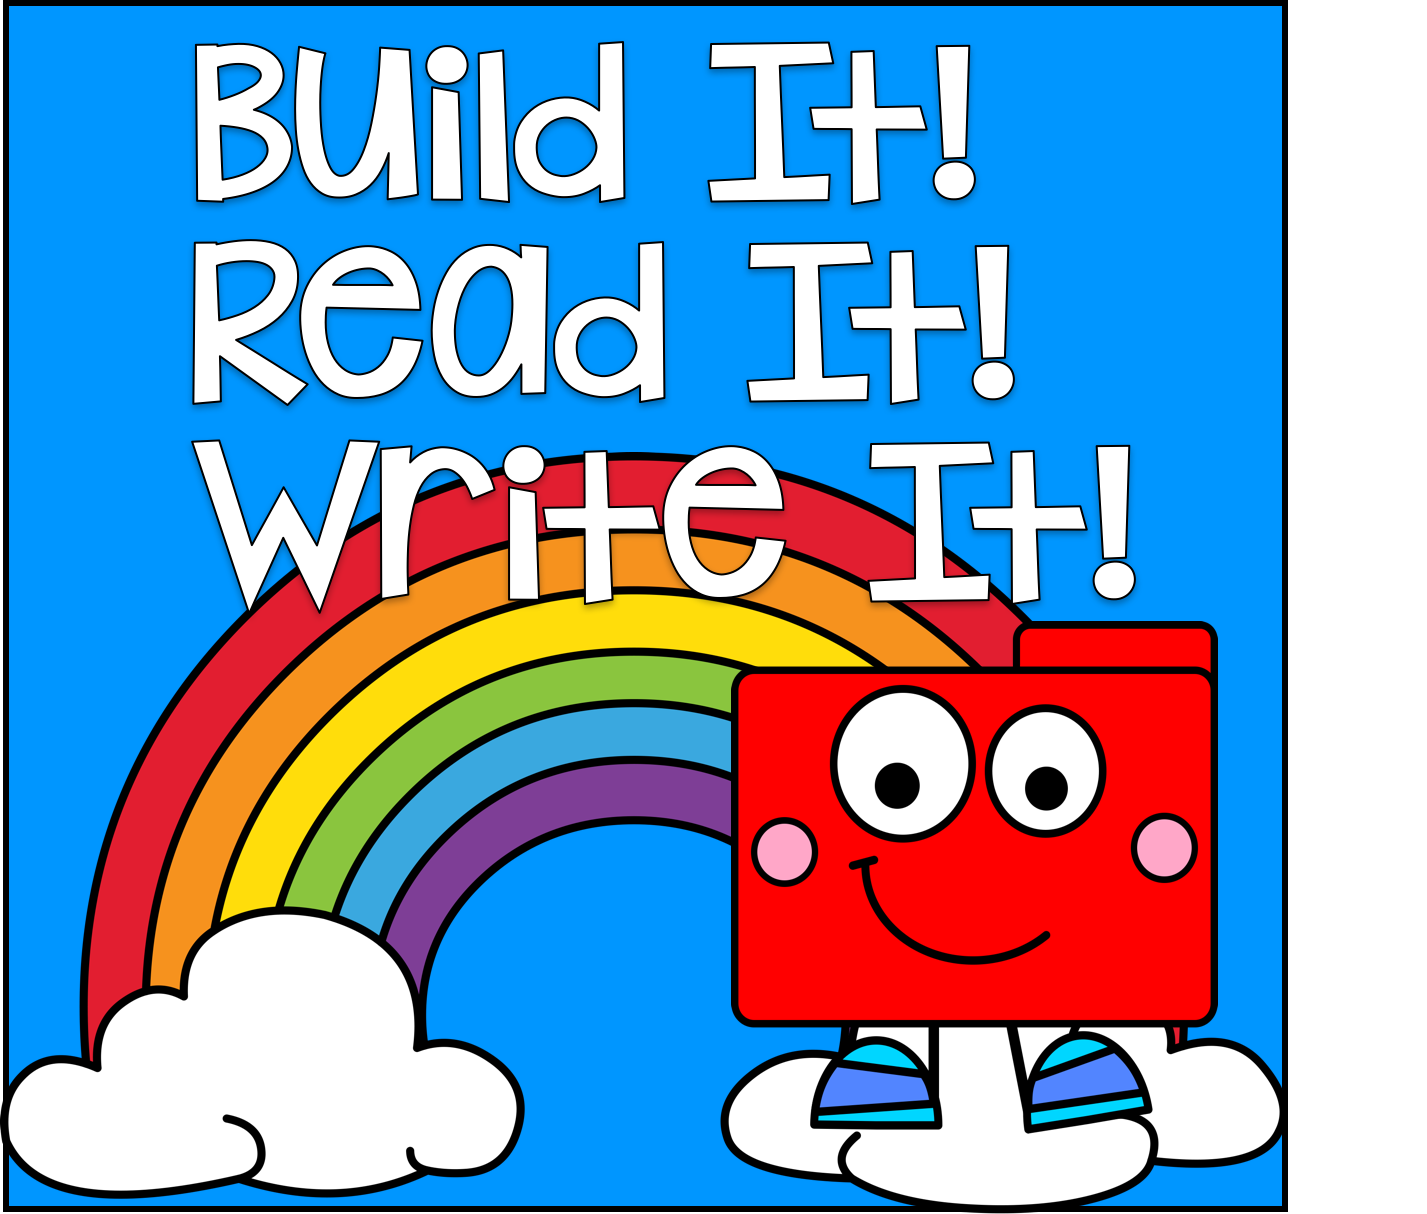 Build it! Read it! Write It!